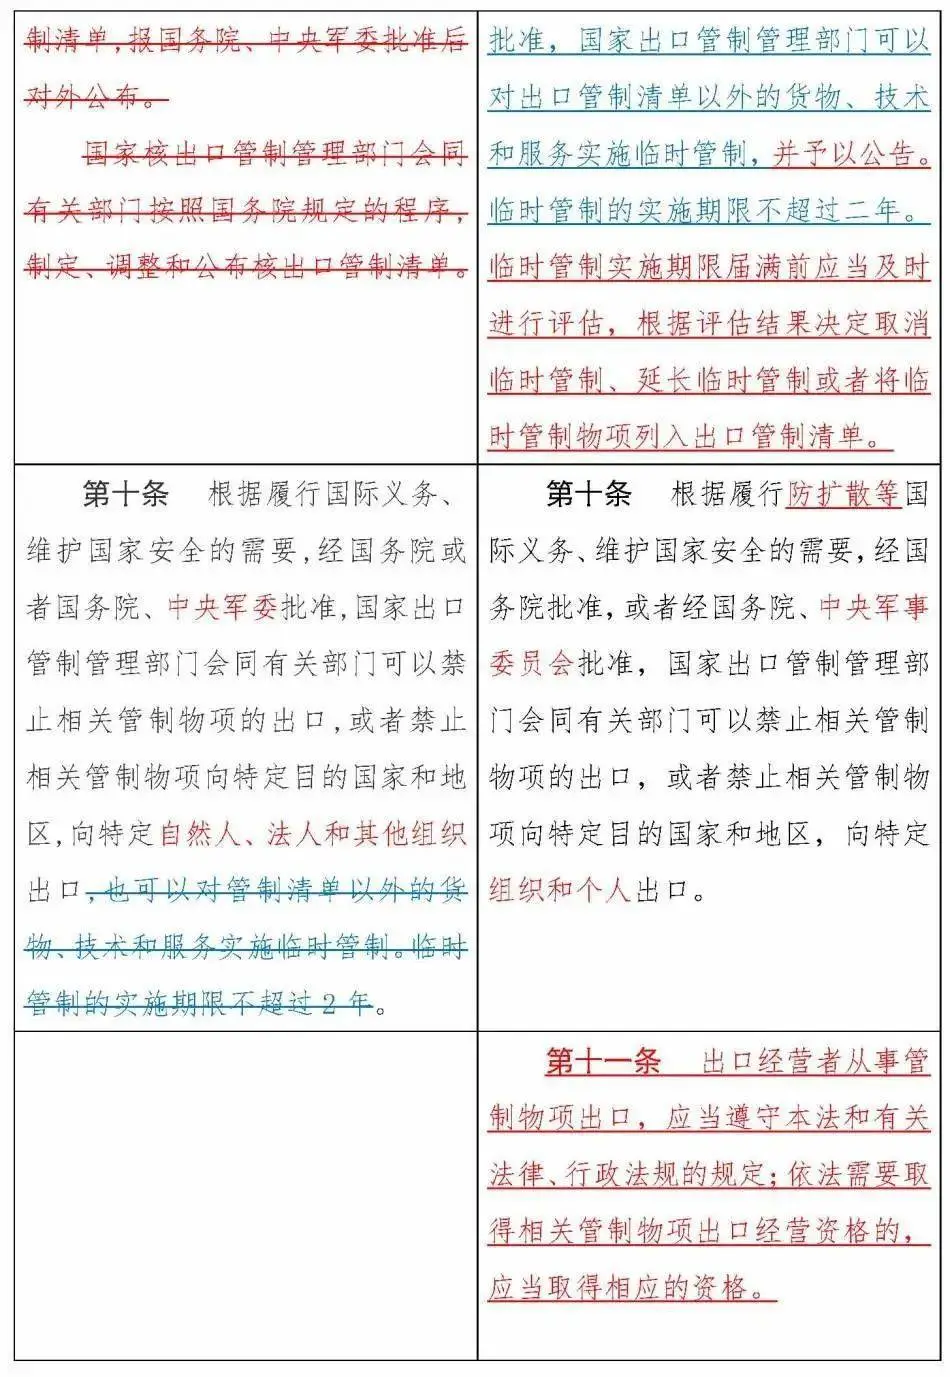 《中华人民共和国出口管制法》正式通过，12月1日实施(图8)